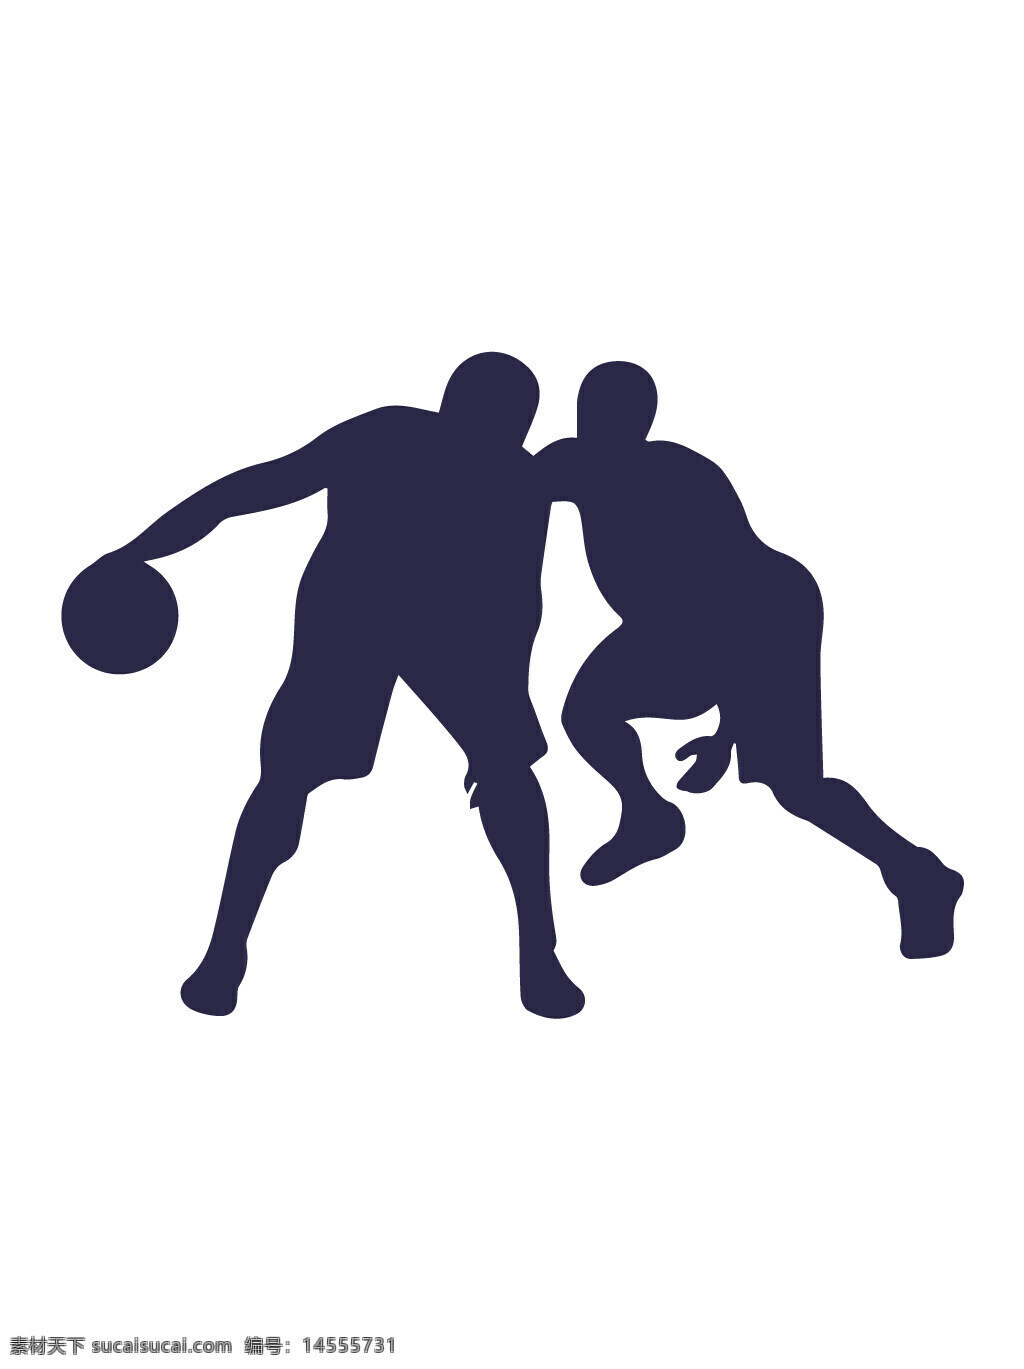 篮球 运球 抢球 球类运动 运动剪影 人物剪影 矢量素材